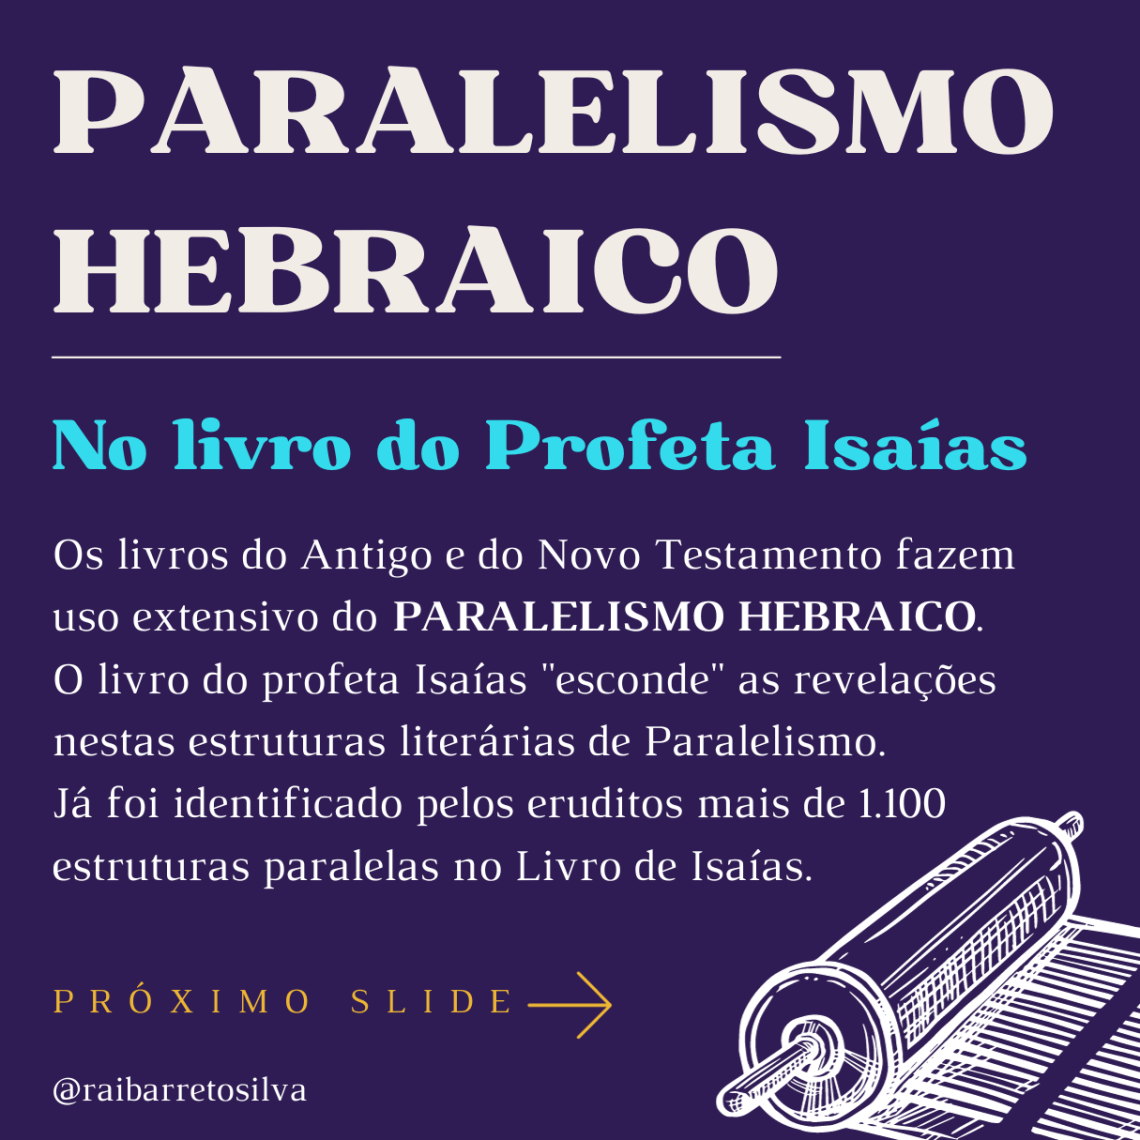 Paralelismo Hebraico método de escrita da Bíblia